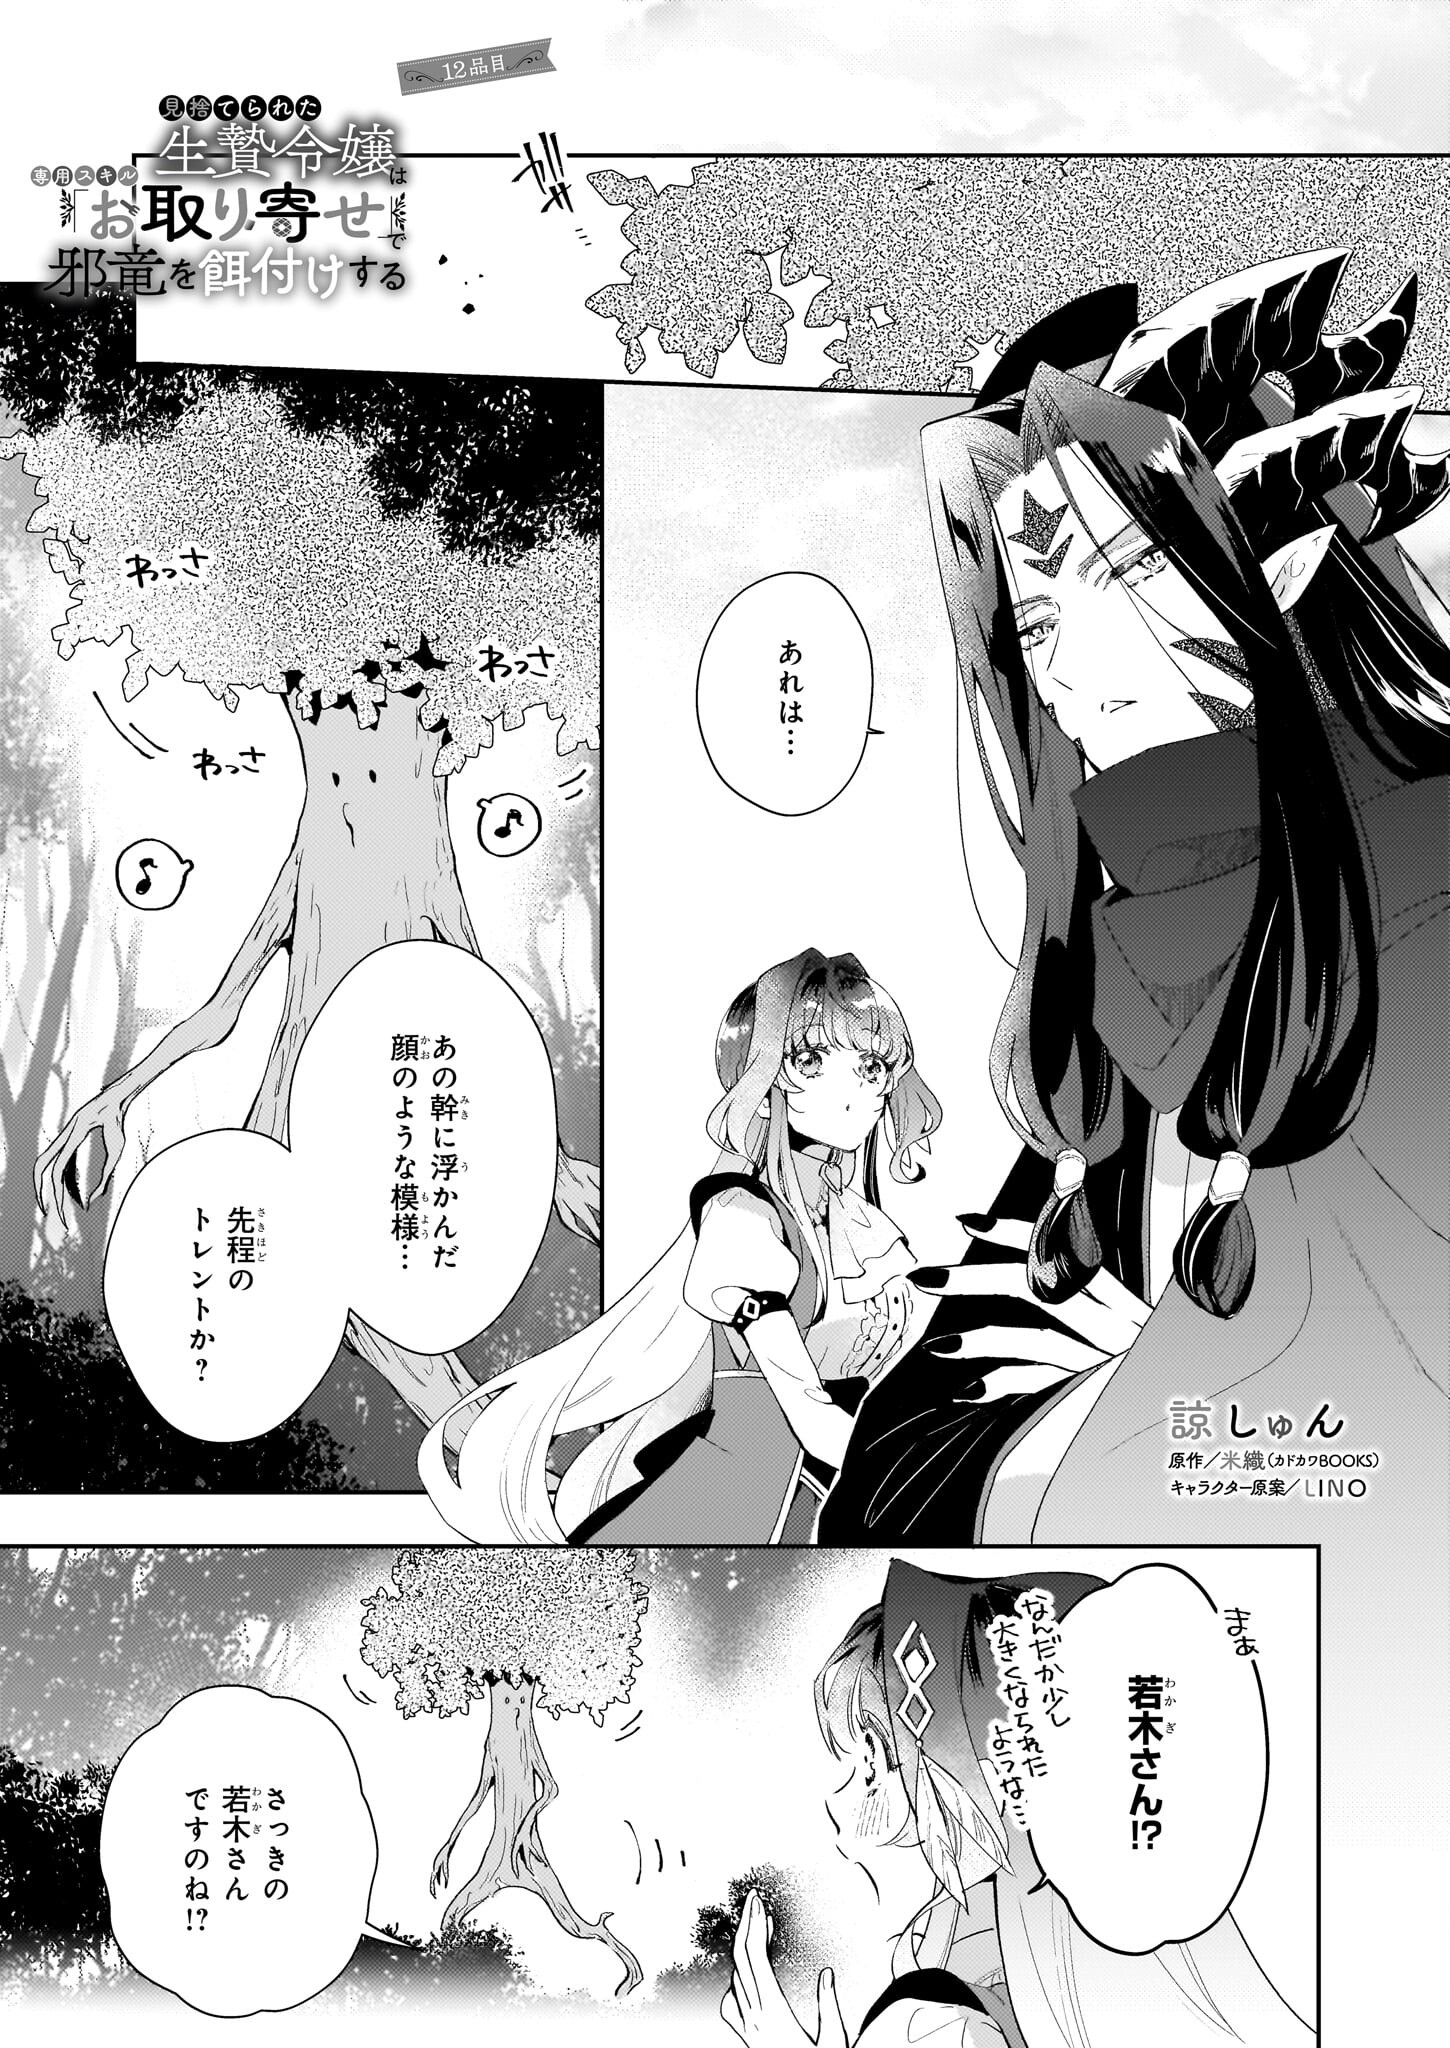 Misuterareta Ikenie Reijou wa Senyou Skill Otoriyose de Jaryuu wo Ezuke suru - Chapter 12 - Page 1